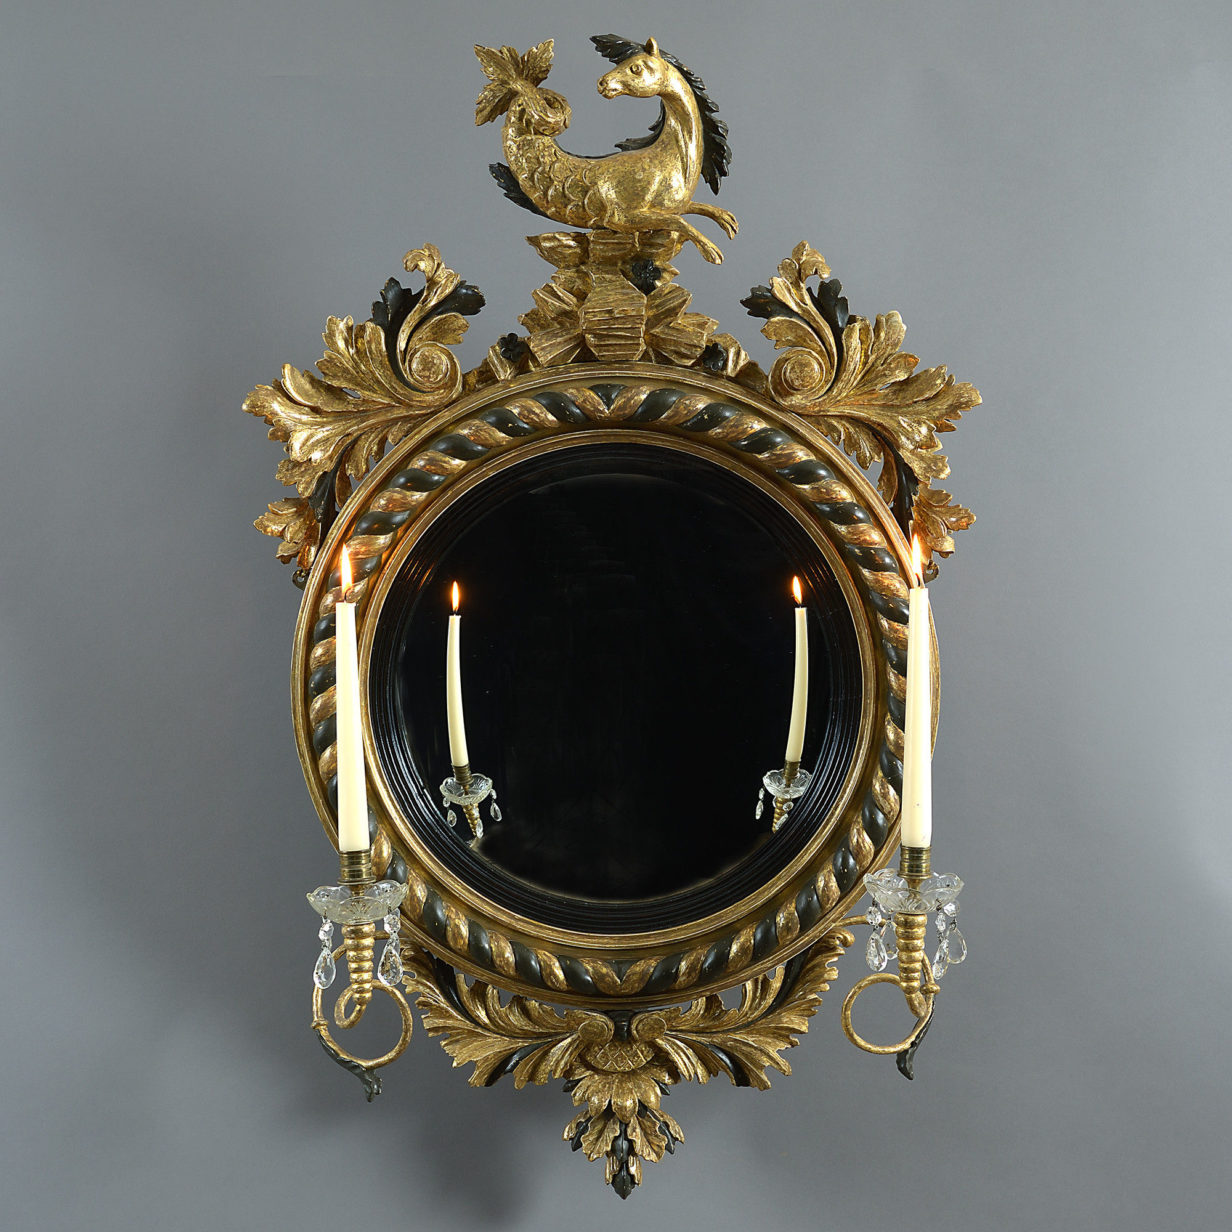 A 19th century regency period convex mirror